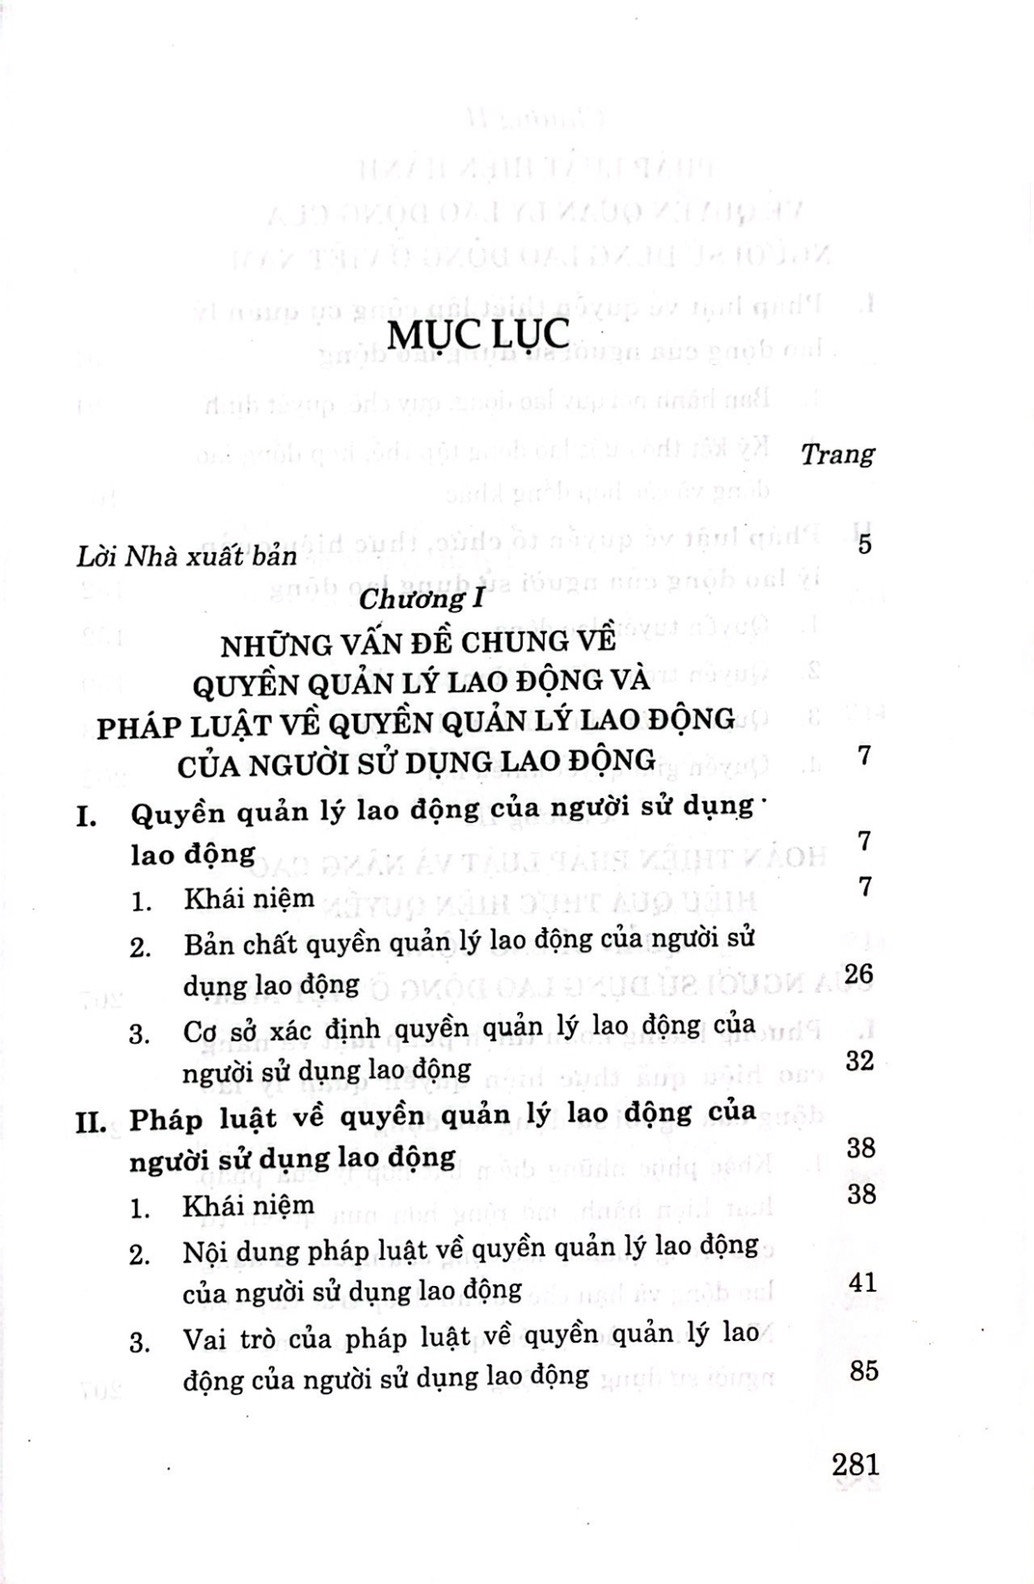 Pháp luật về quyền quản lý lao động của người sử dụng lao động ở Việt Nam (Sách chuyên khảo)